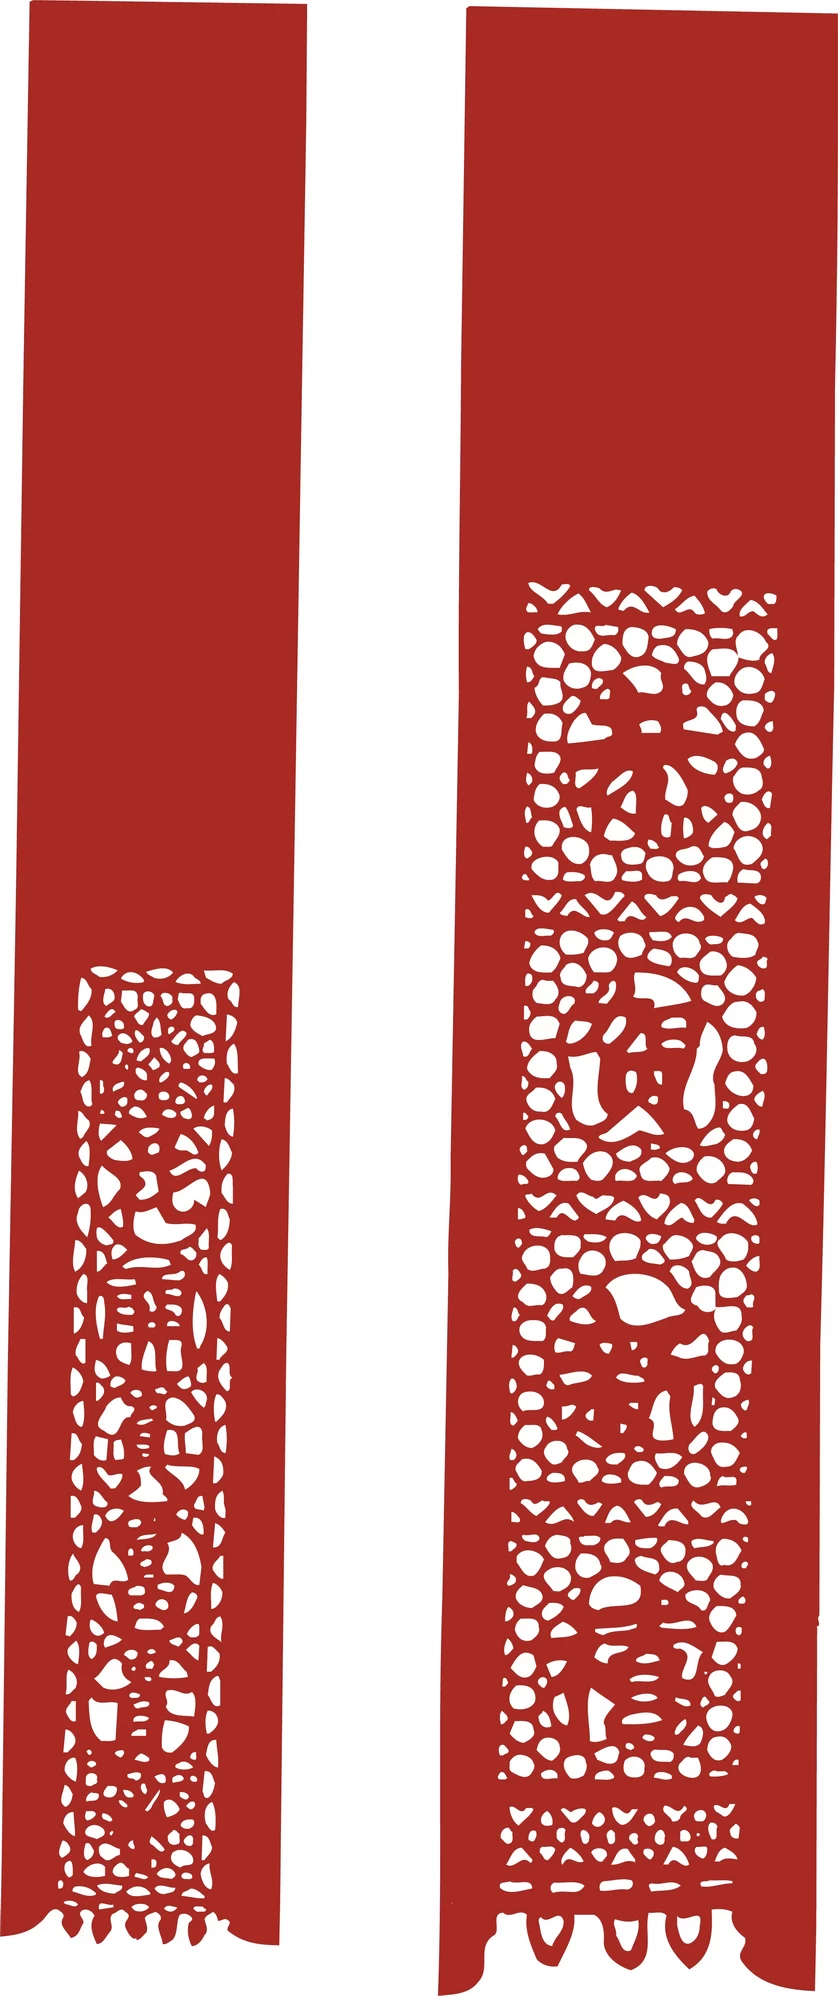 中国风中式传统喜庆民俗人物动物窗花剪纸插画边框AI矢量PNG素材【1942】